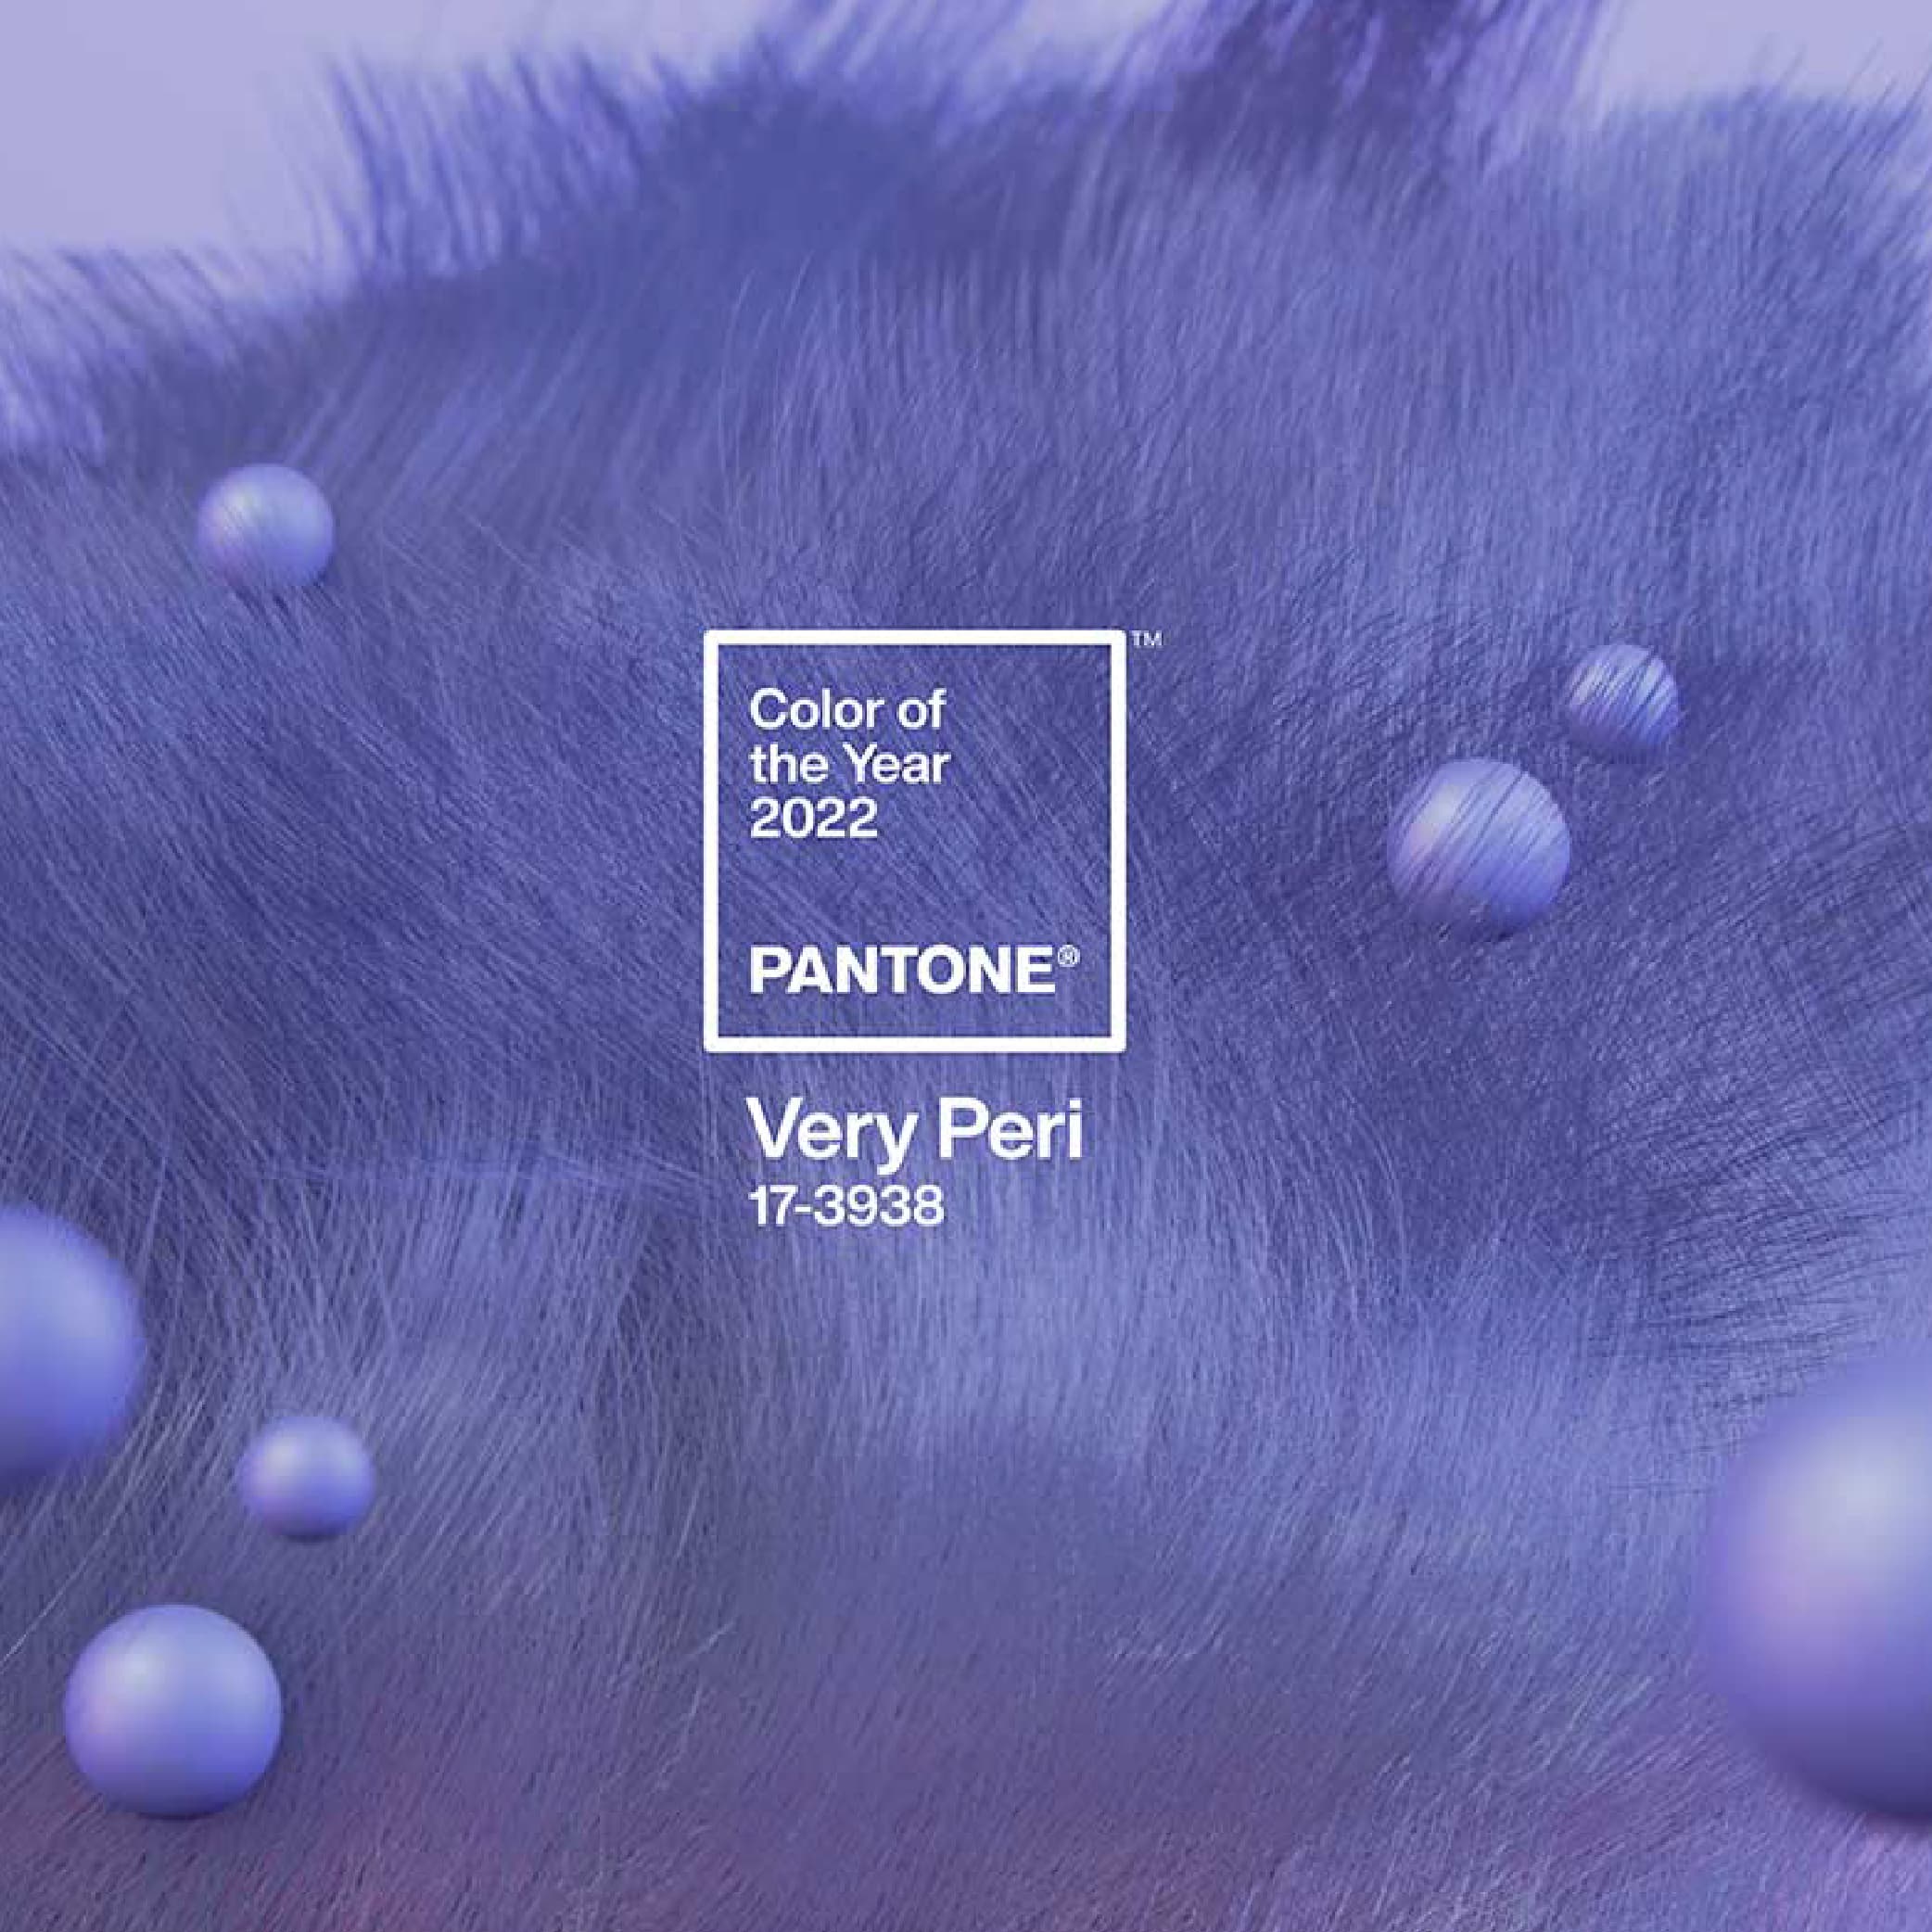 Very Peri Pantone